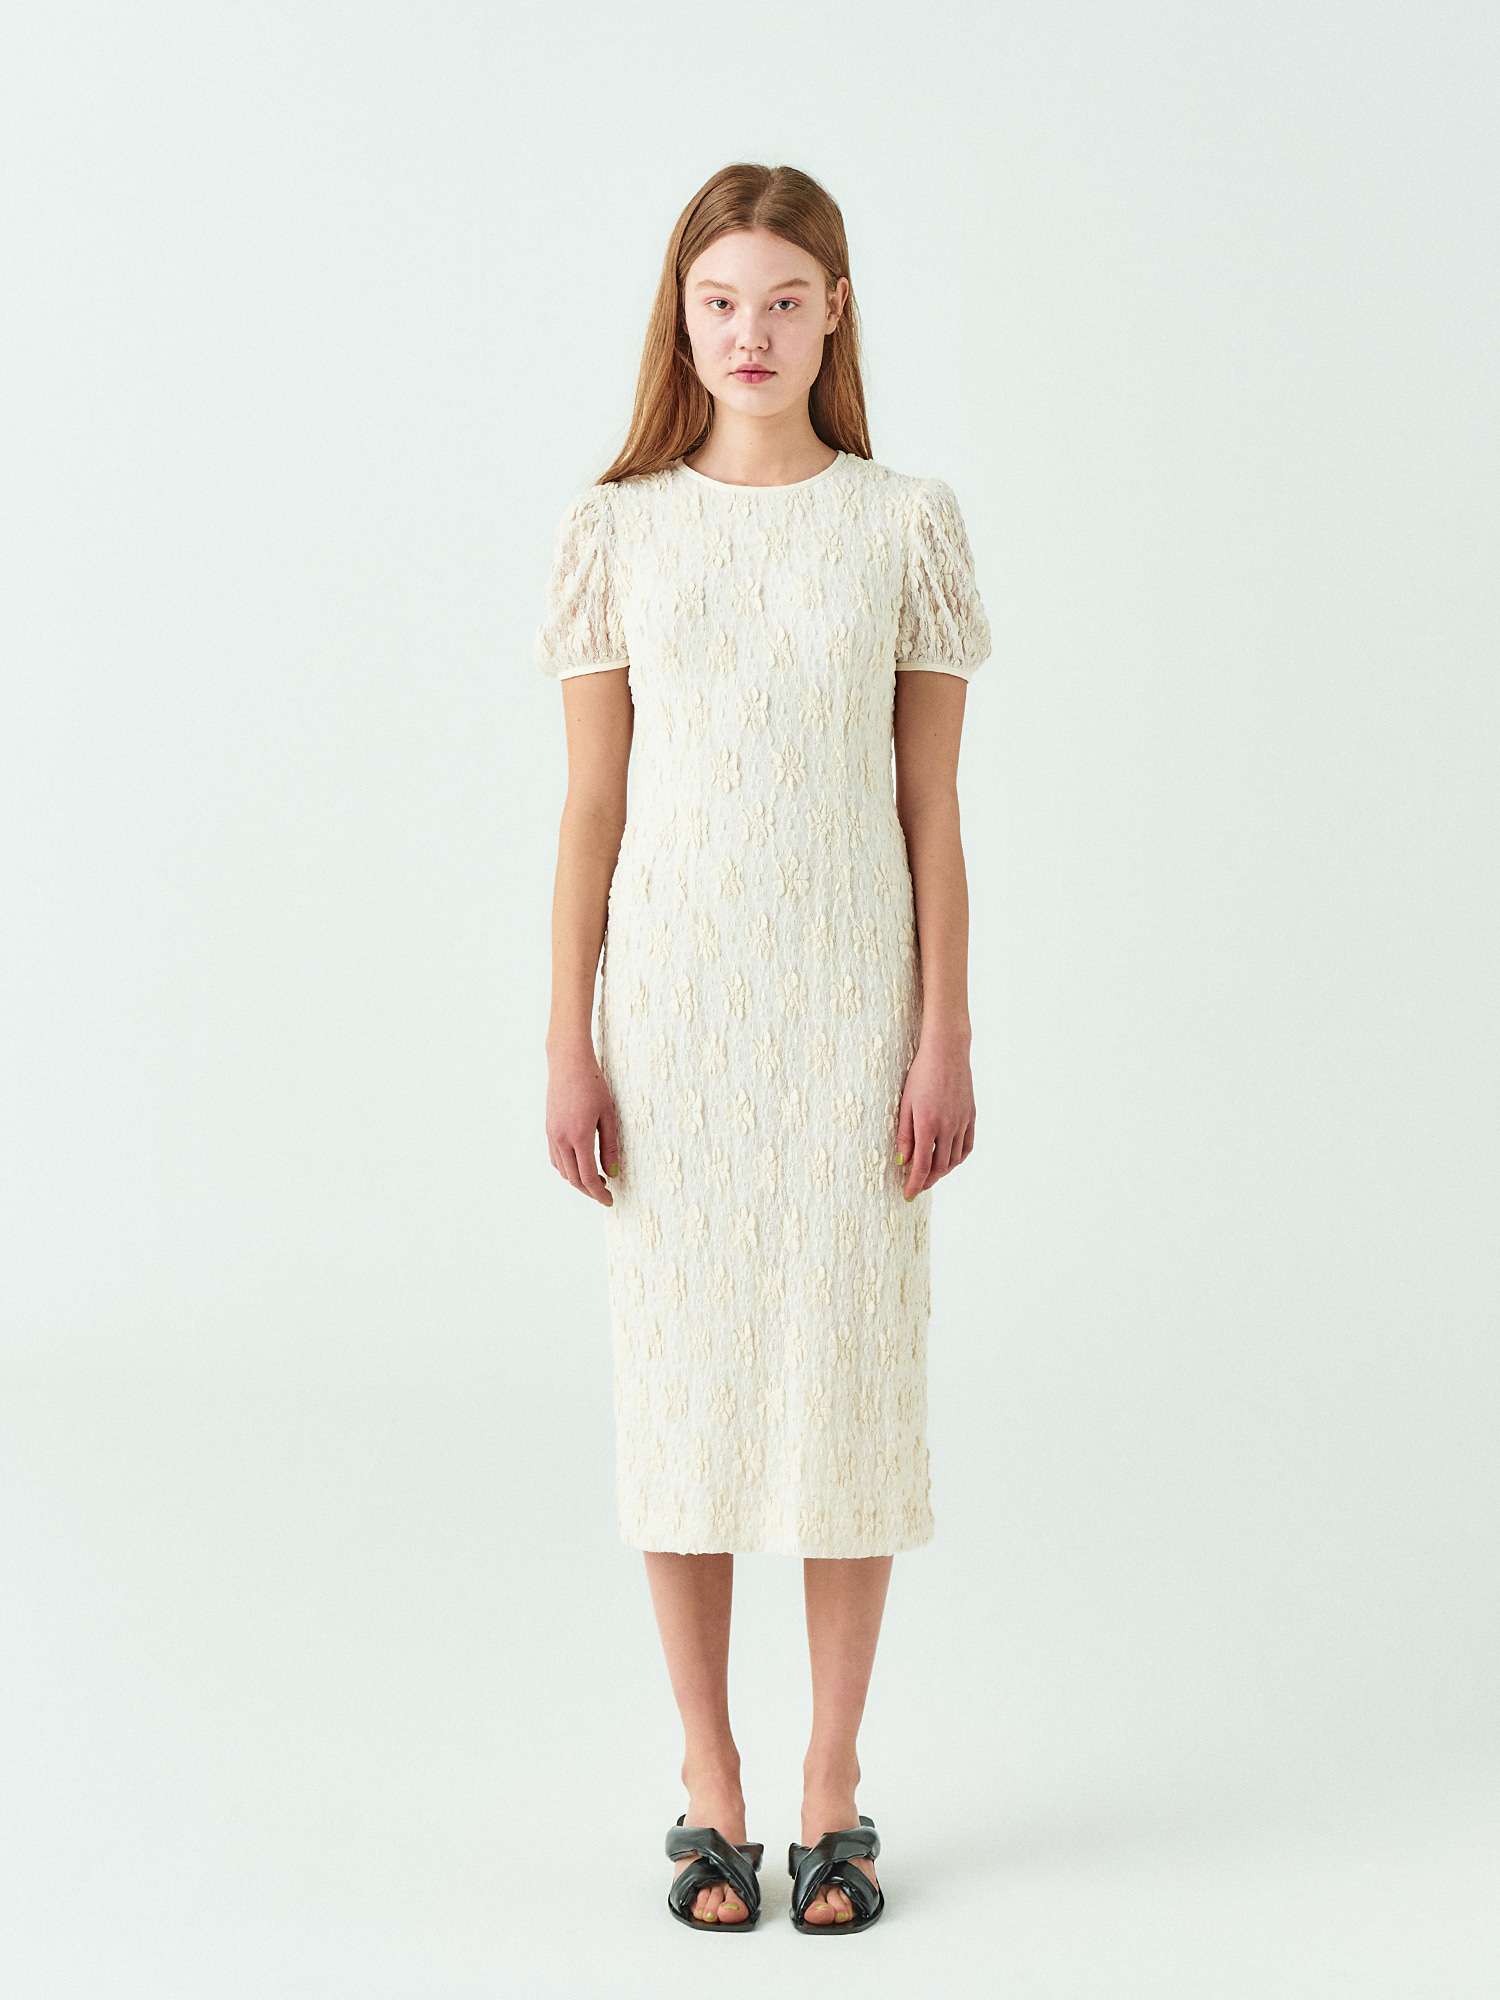 Lace Puff Line Dress in Cream